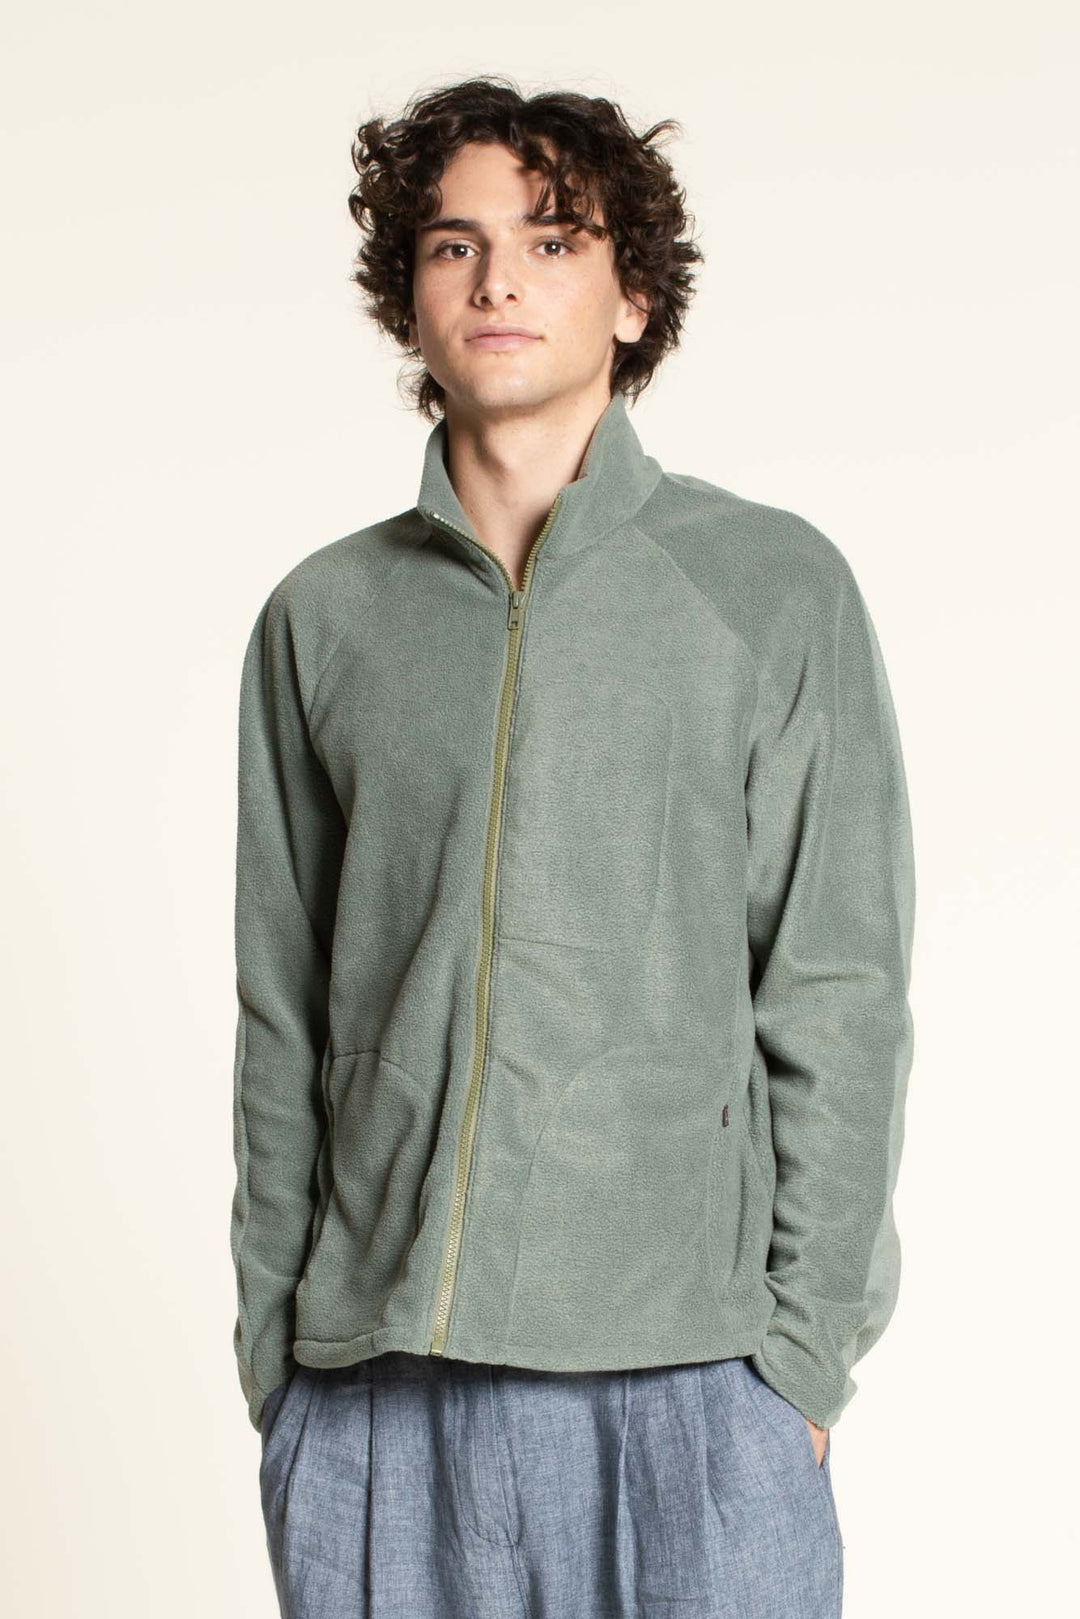 Men's Fleece jacket sewing pattern- Men's Sizes 2XS-4XL